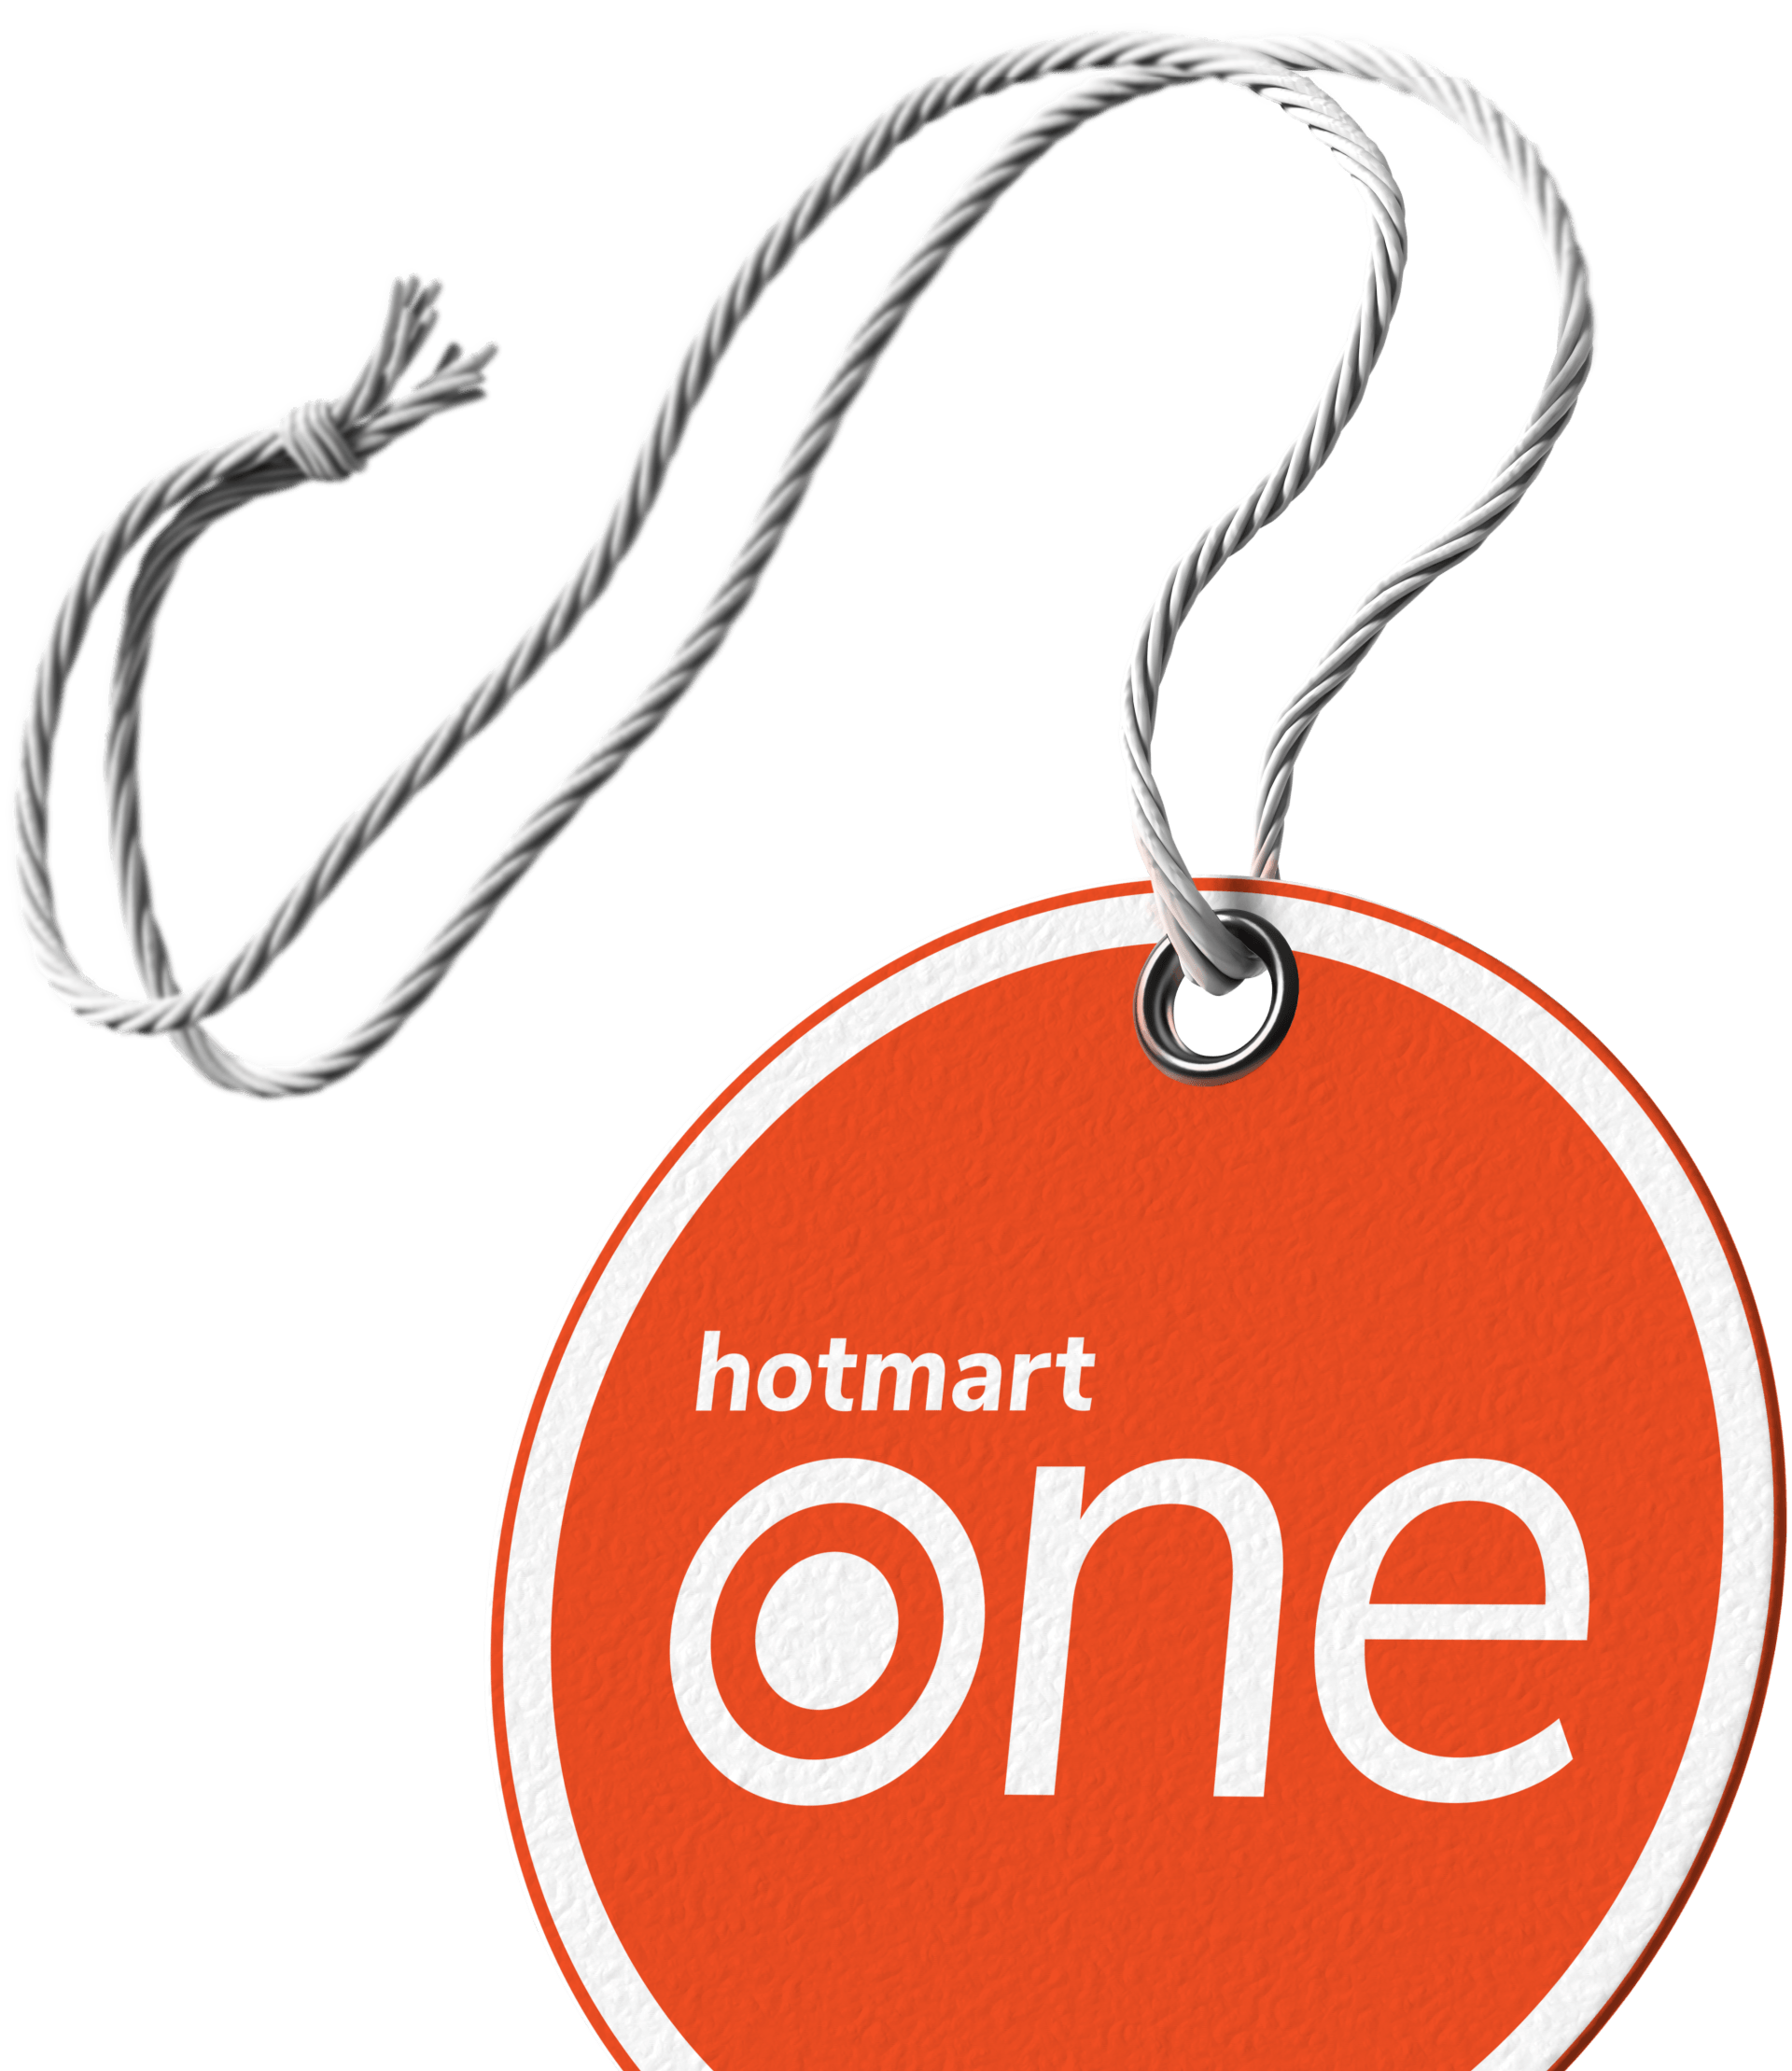 Etiqueta naranja con el logo de Hotmart One en color blanco.